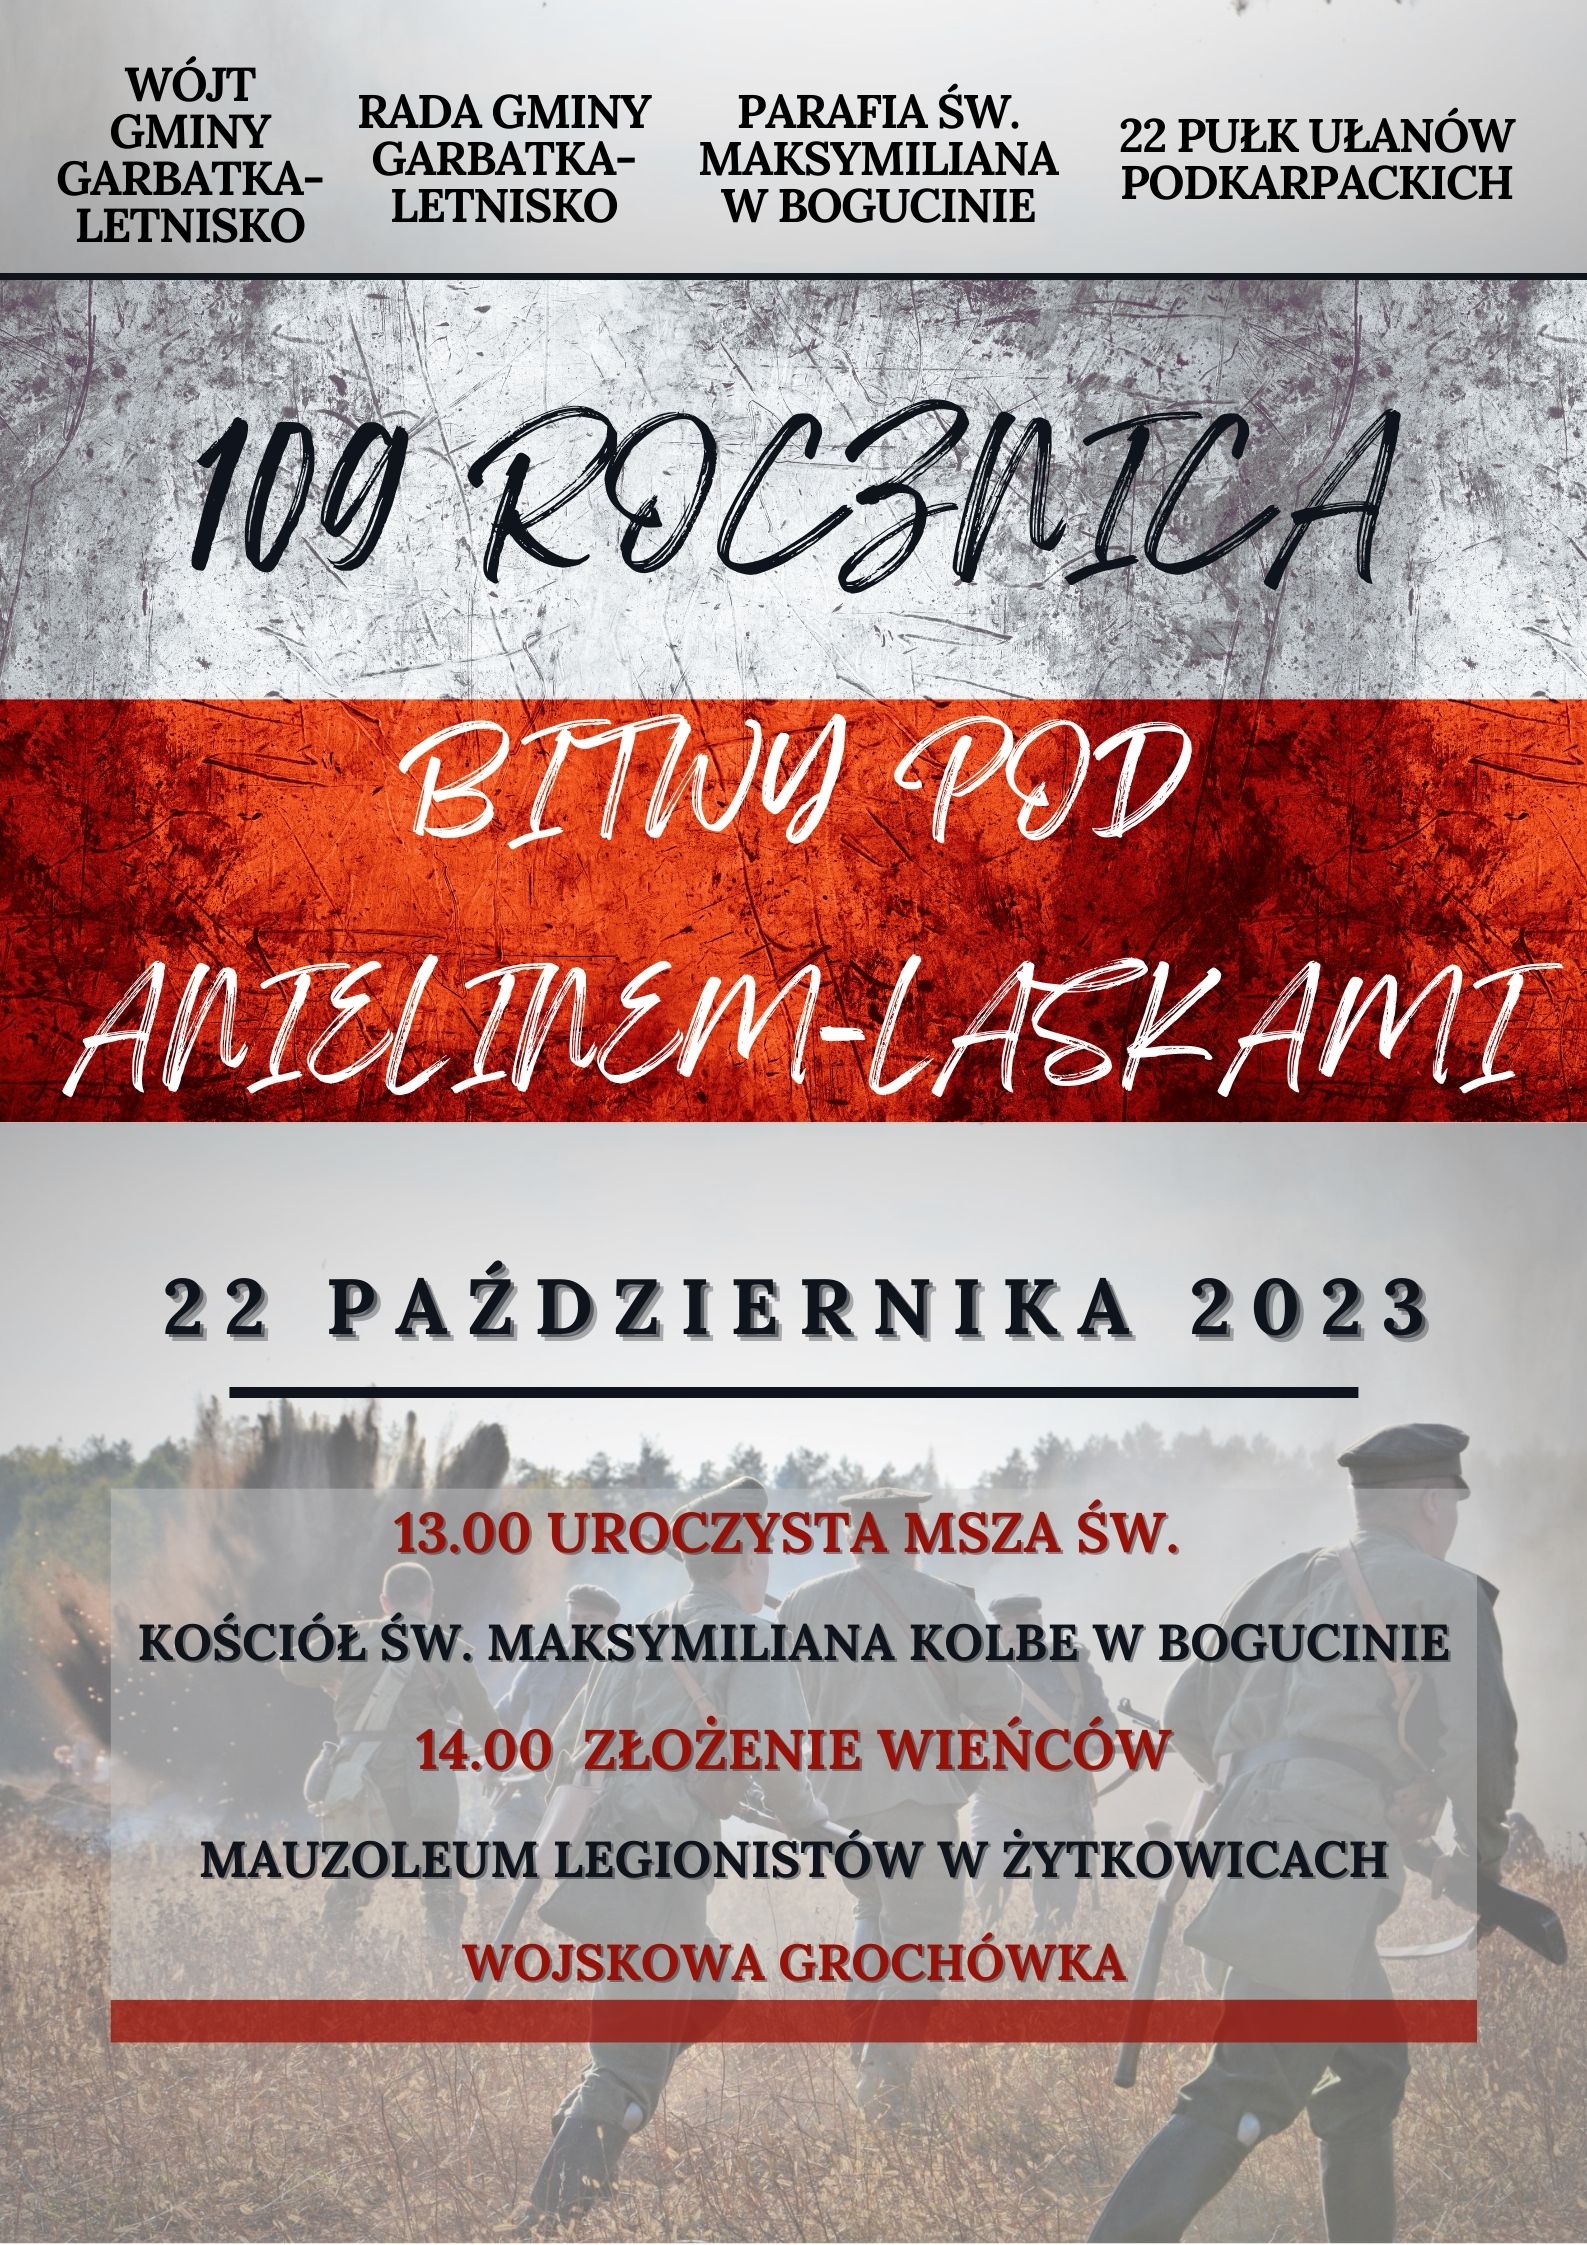 Obchody 109 rocznicy bitwy pod Anielinem-Laskami